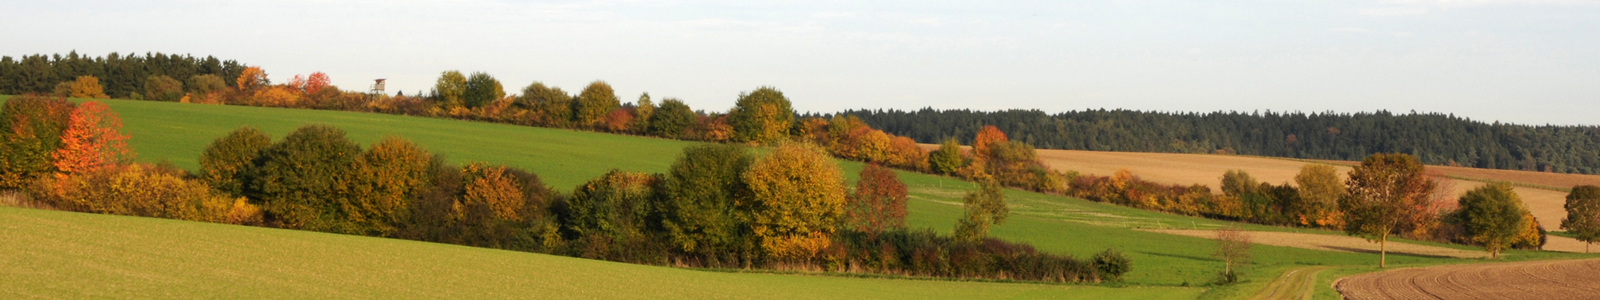 Herbstliche Bäume mit eingesäten Feldern ©LfL Bayern